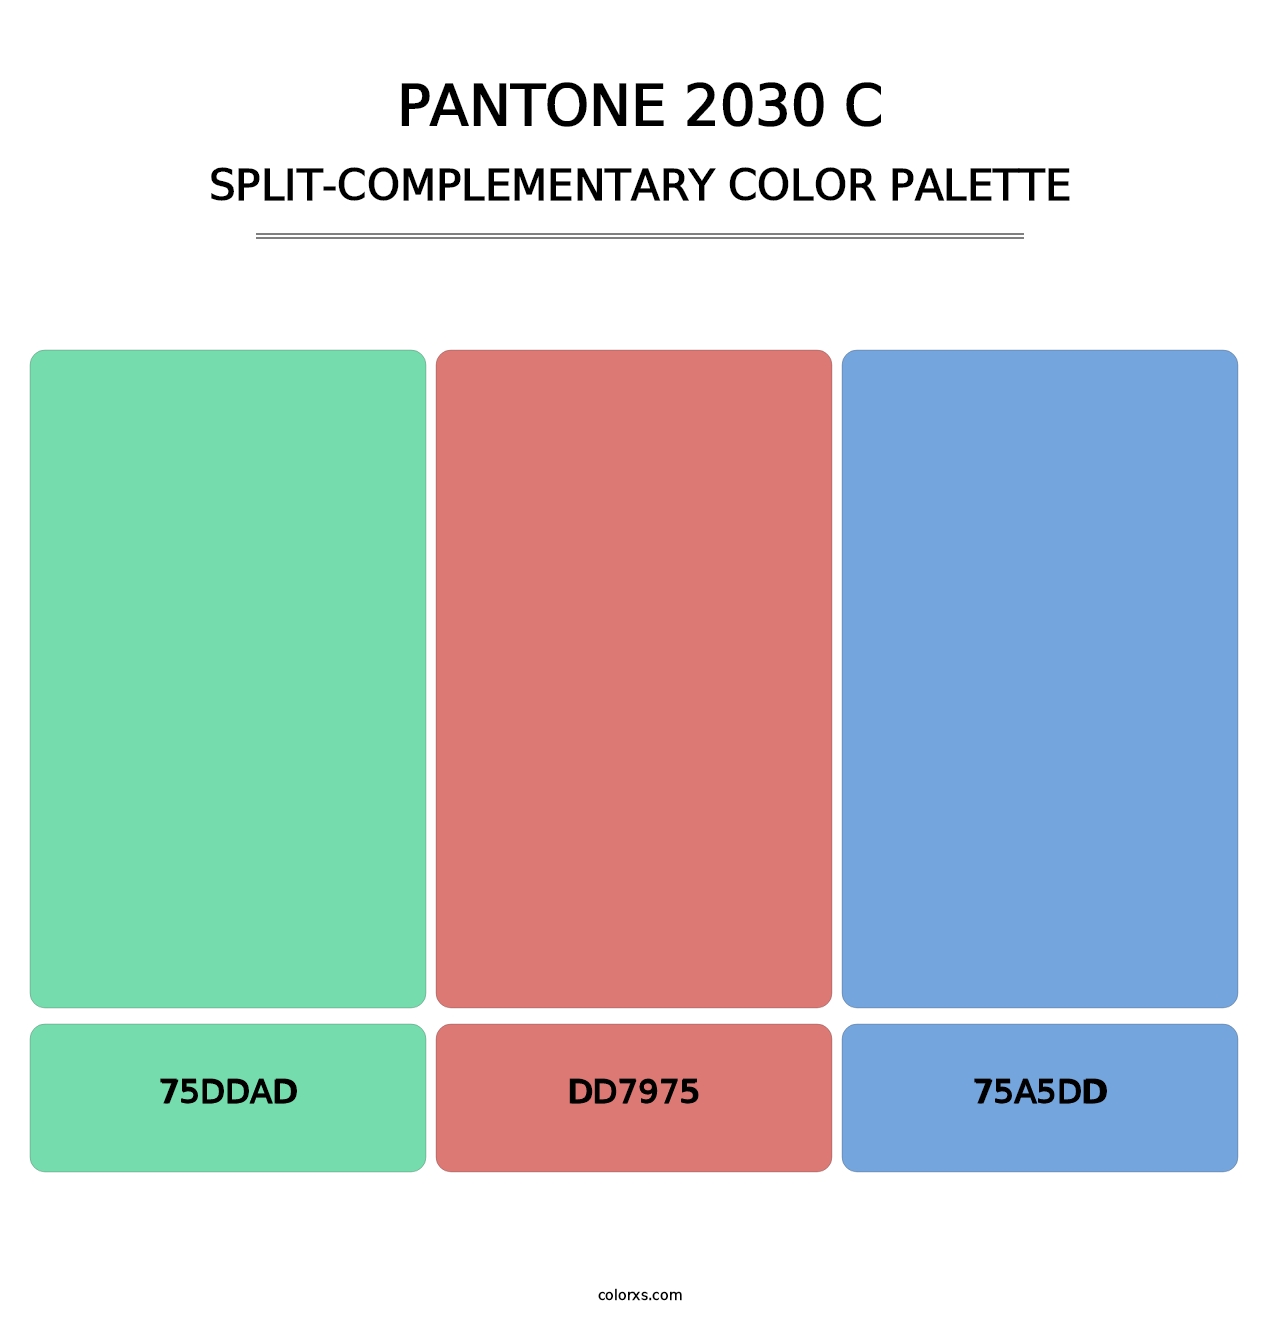 PANTONE 2030 C - Split-Complementary Color Palette